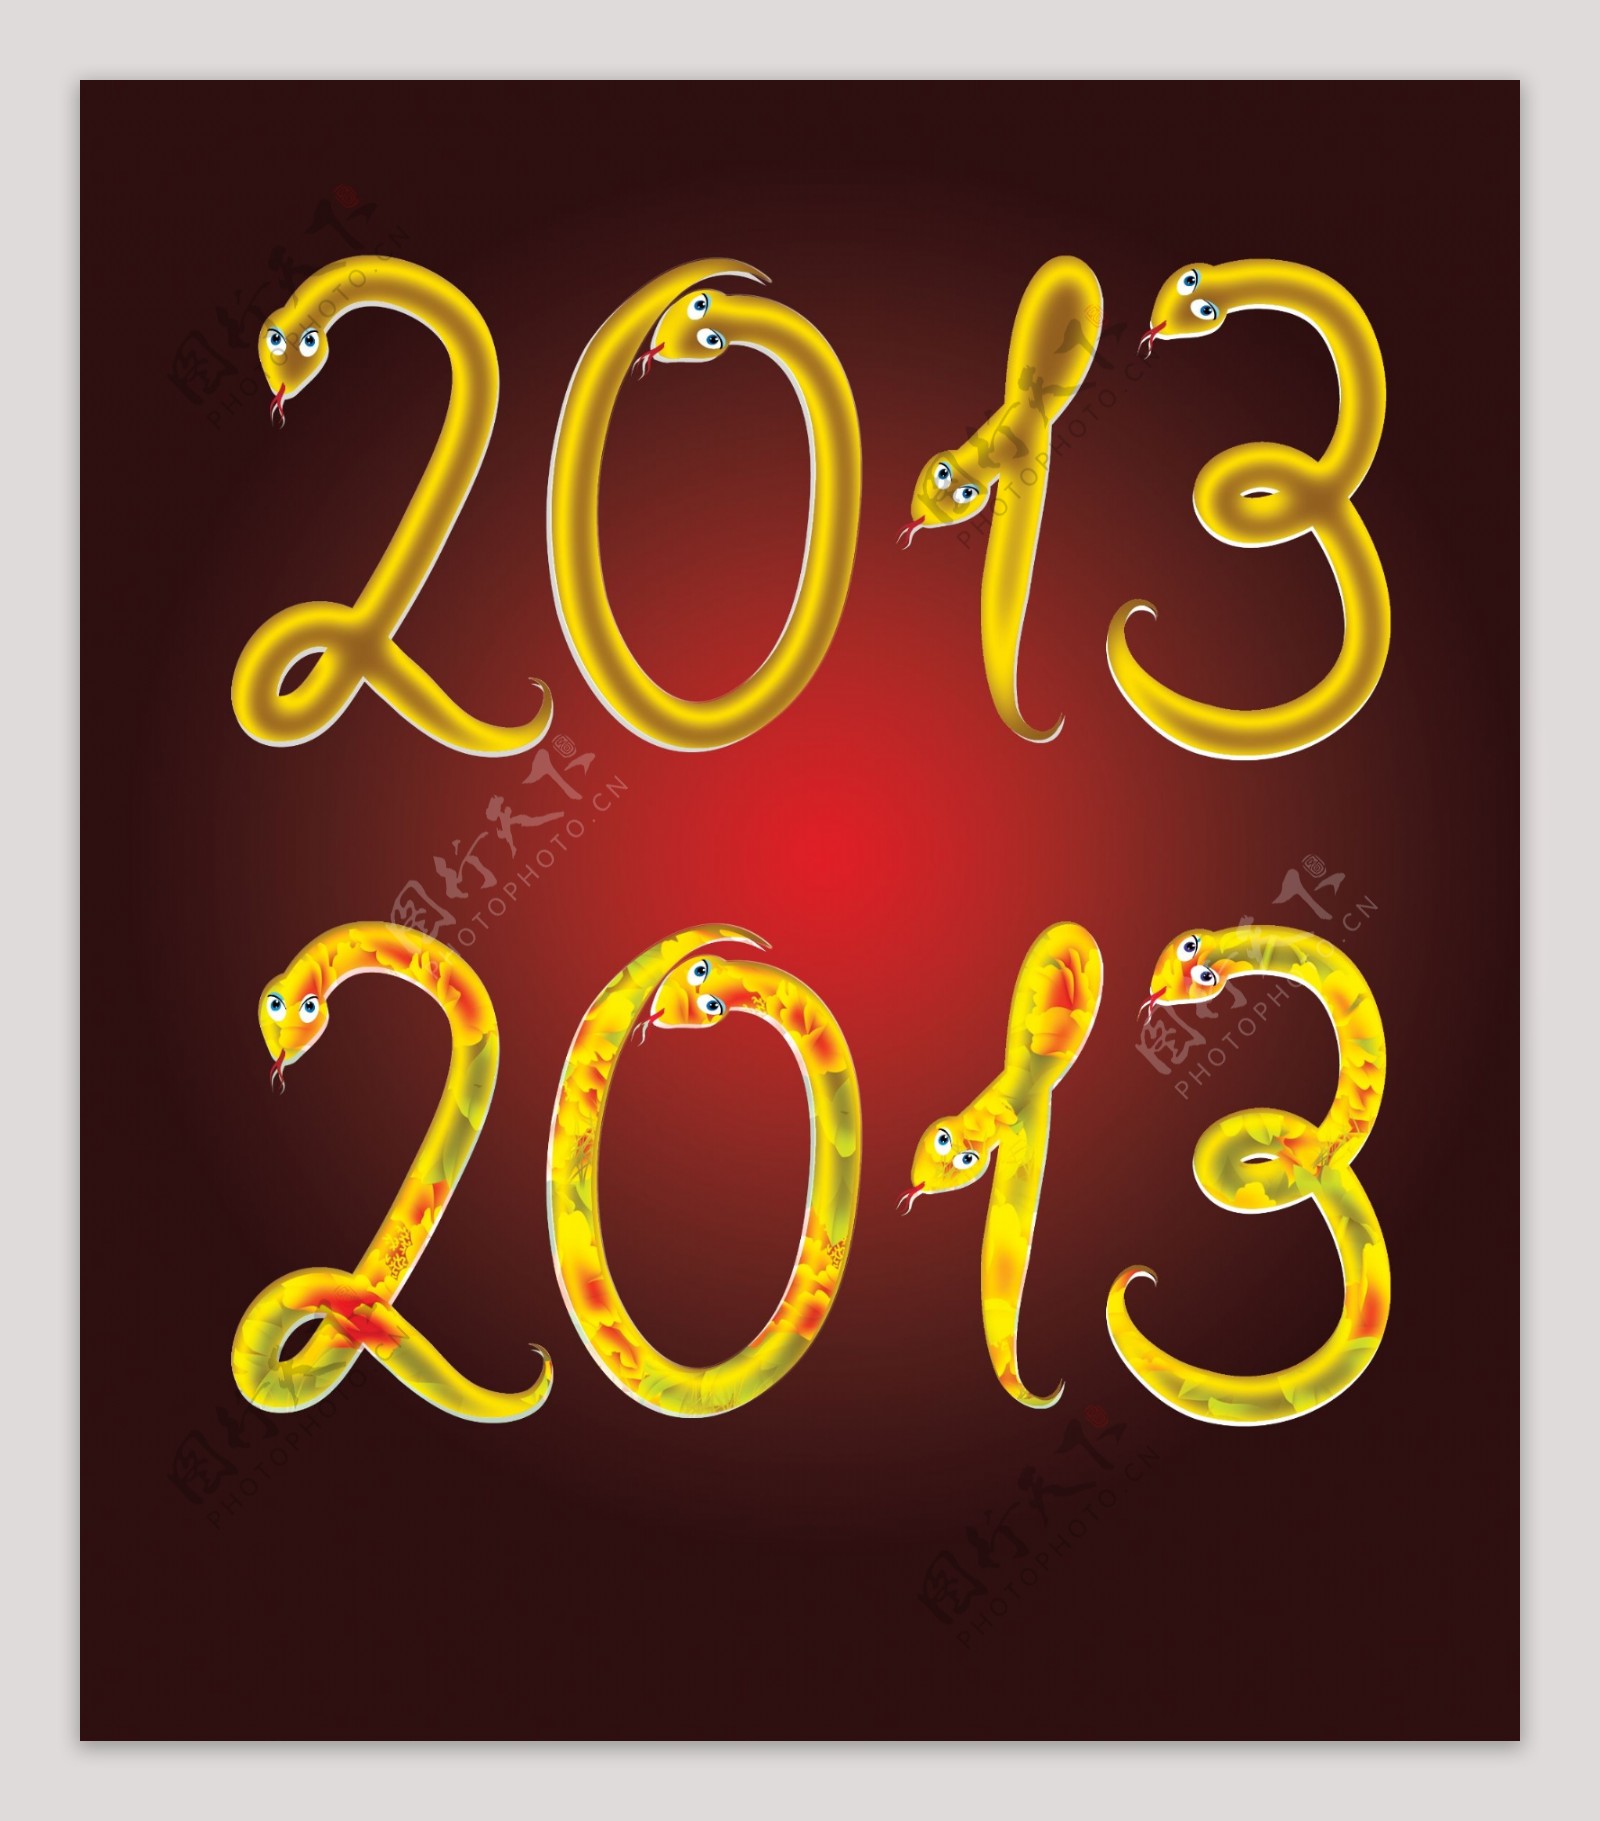 2013蛇年字体设计图片